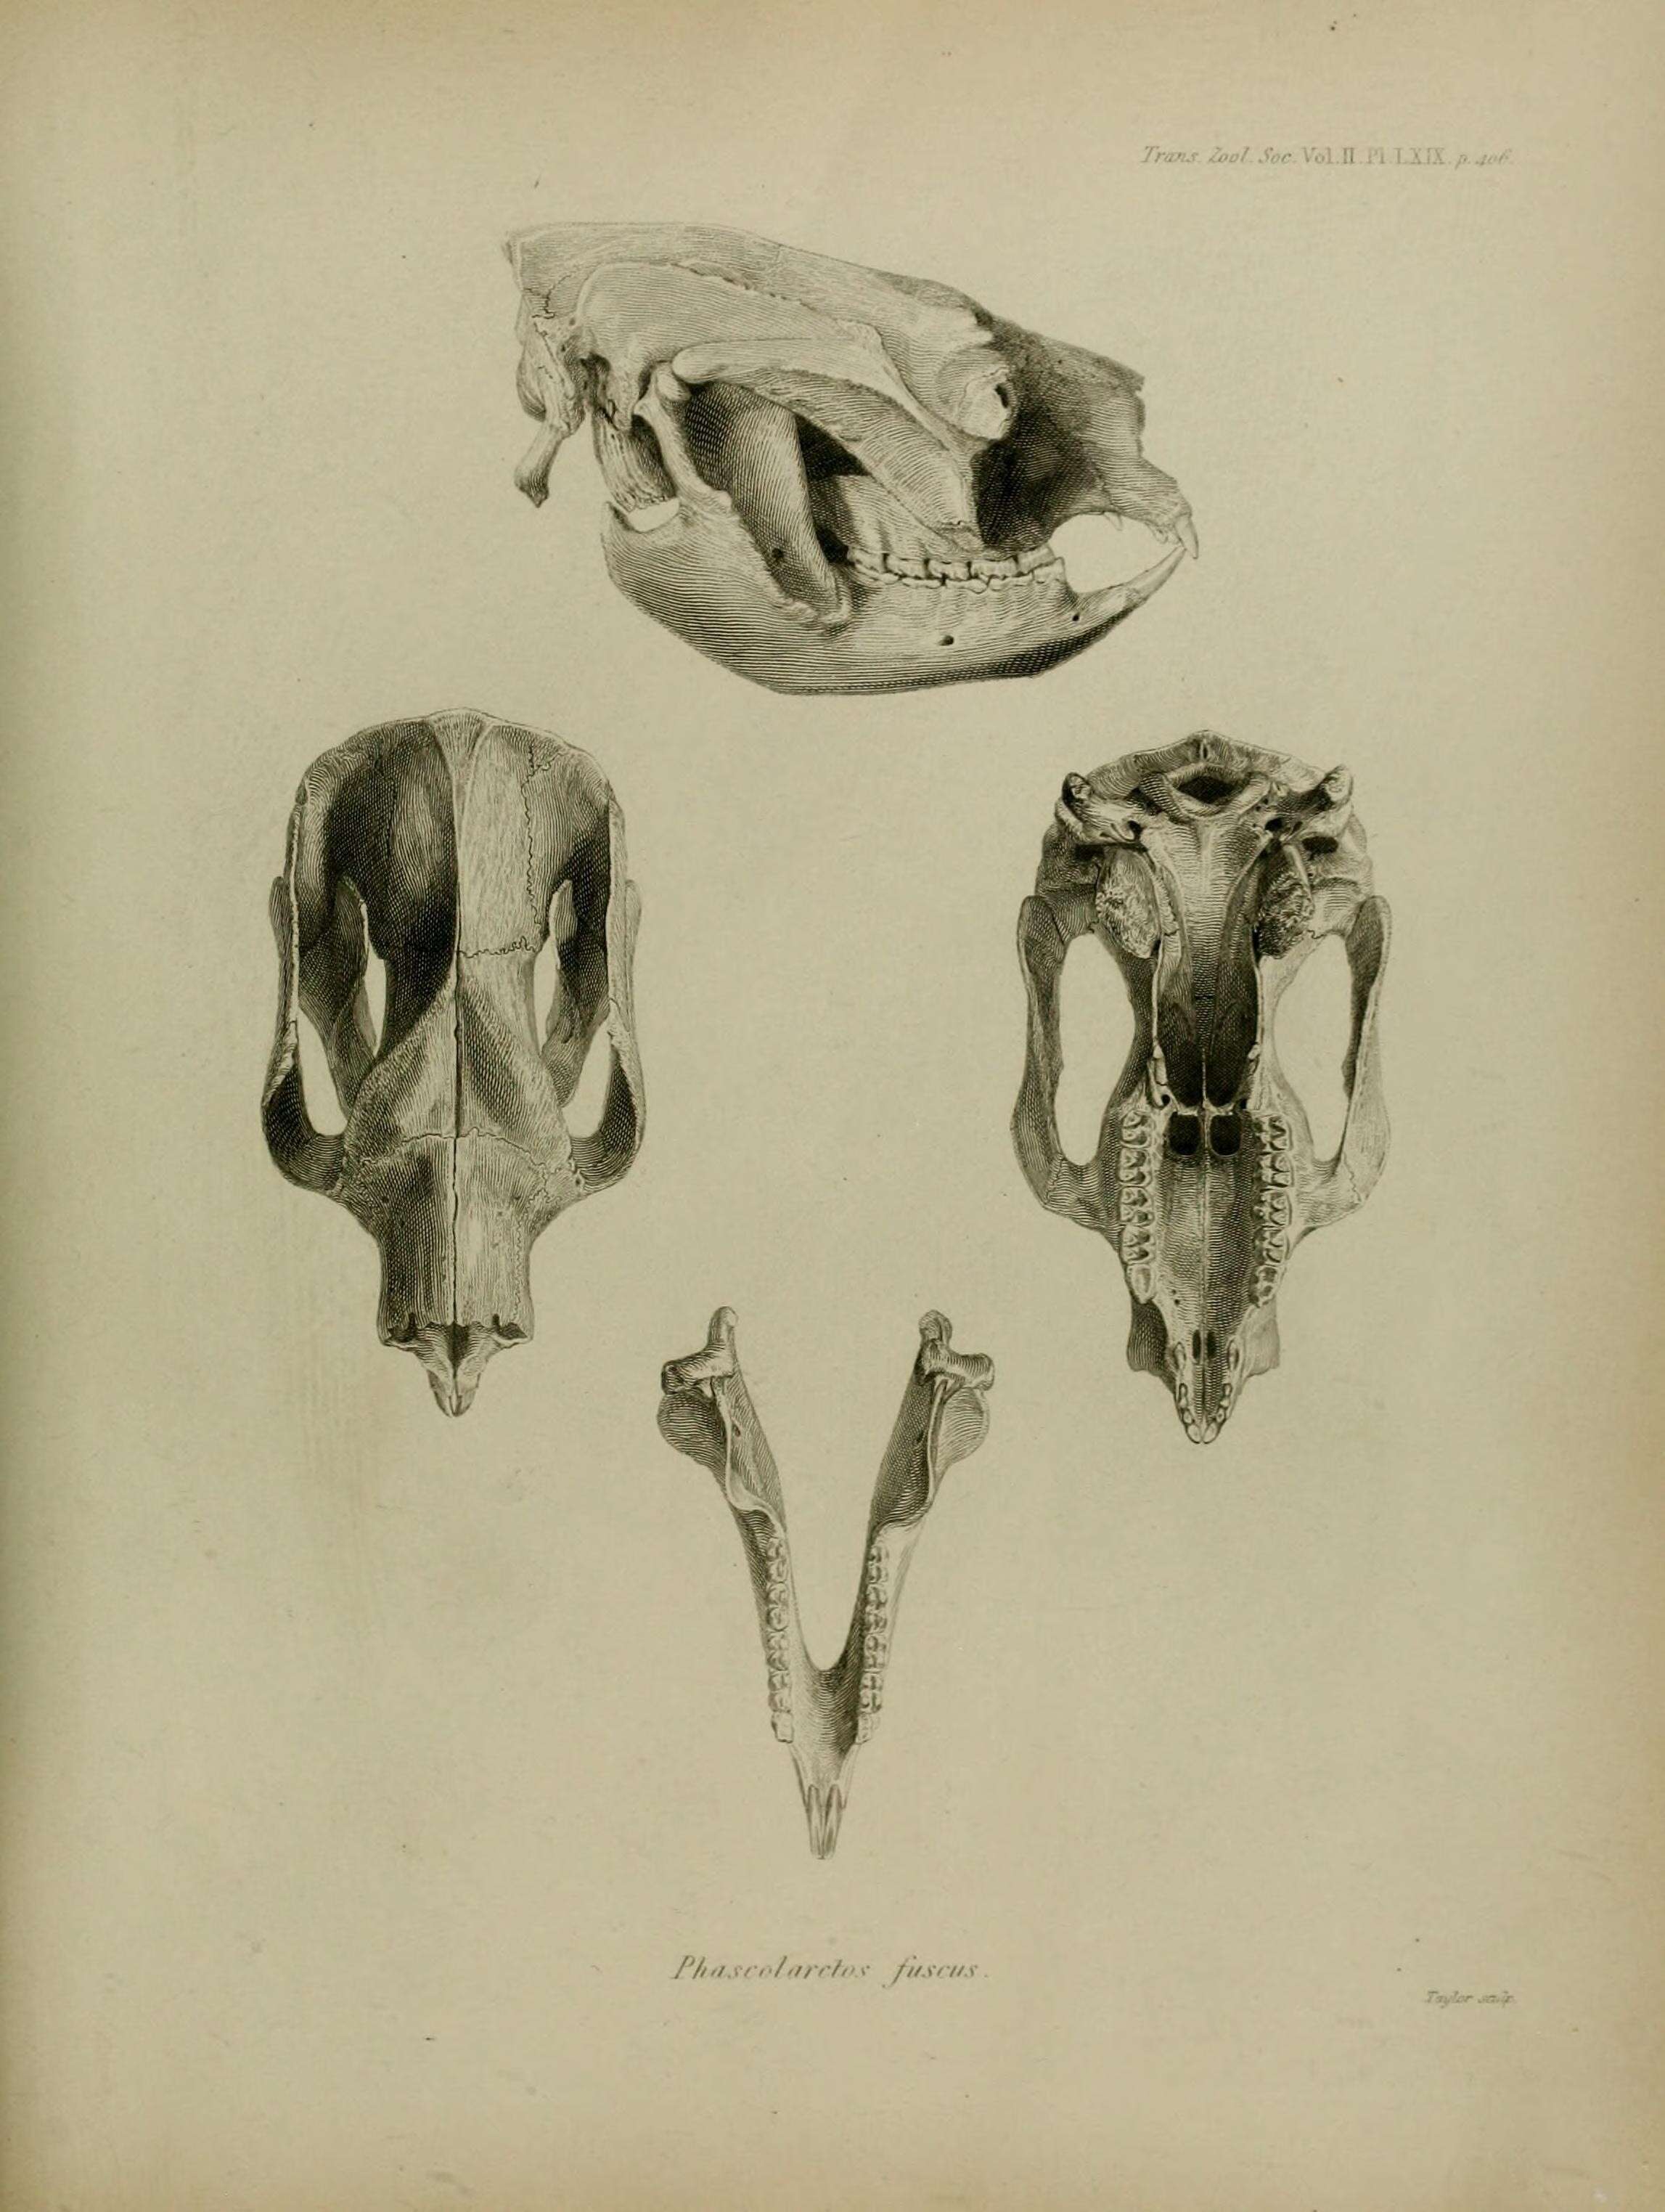 Image of Phascolarctos fuscus